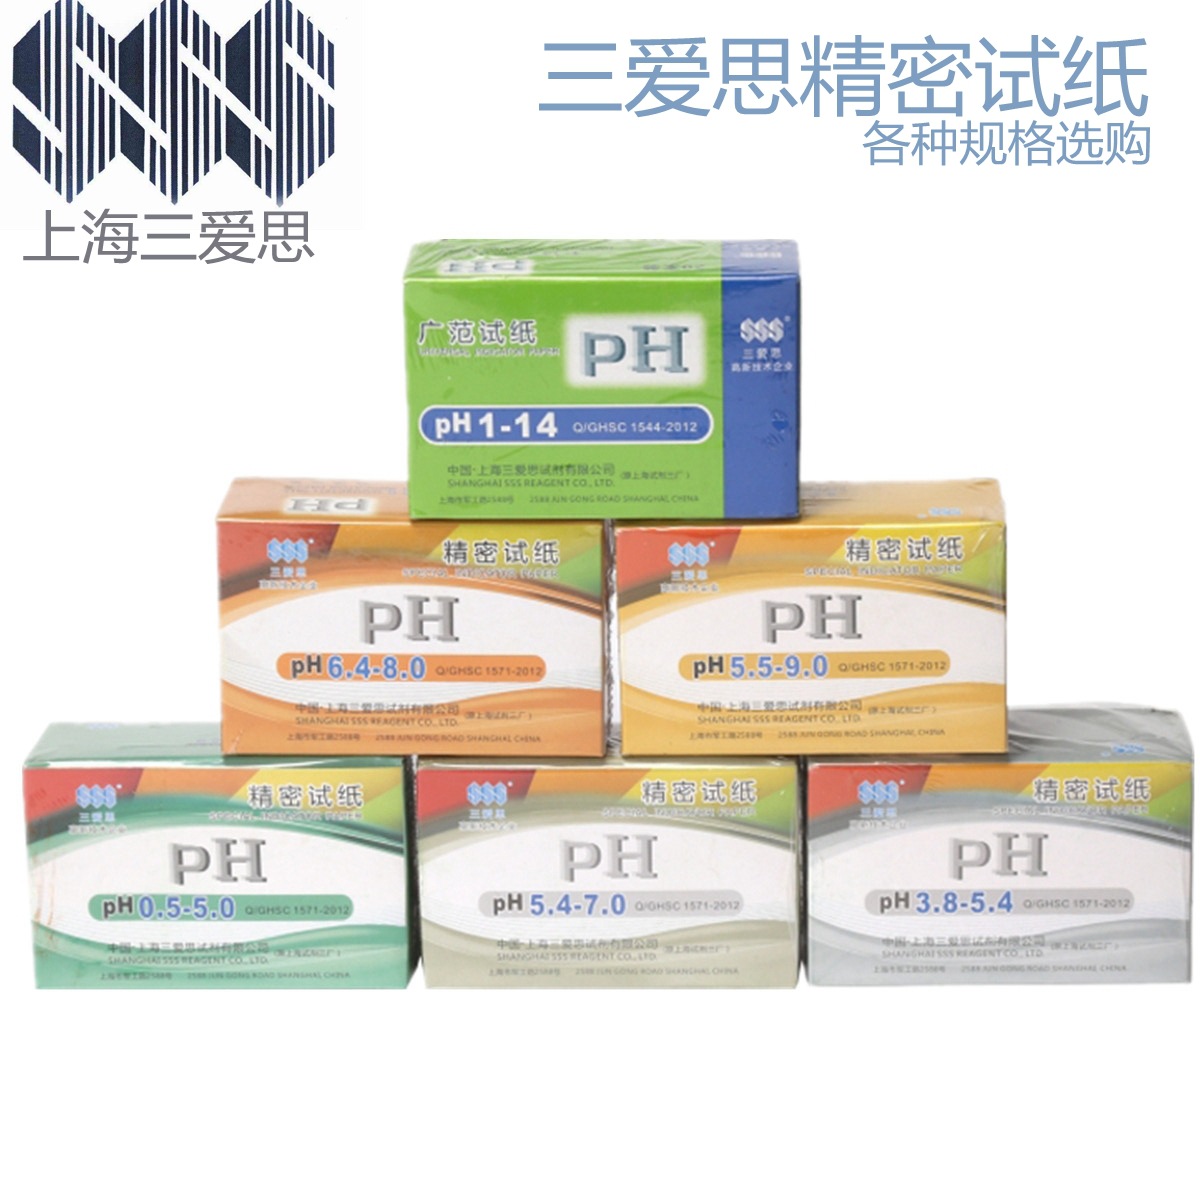 三爱思广泛试纸PH1-14 测试纸 精密唾液尿液化妆品水质酸碱度检测